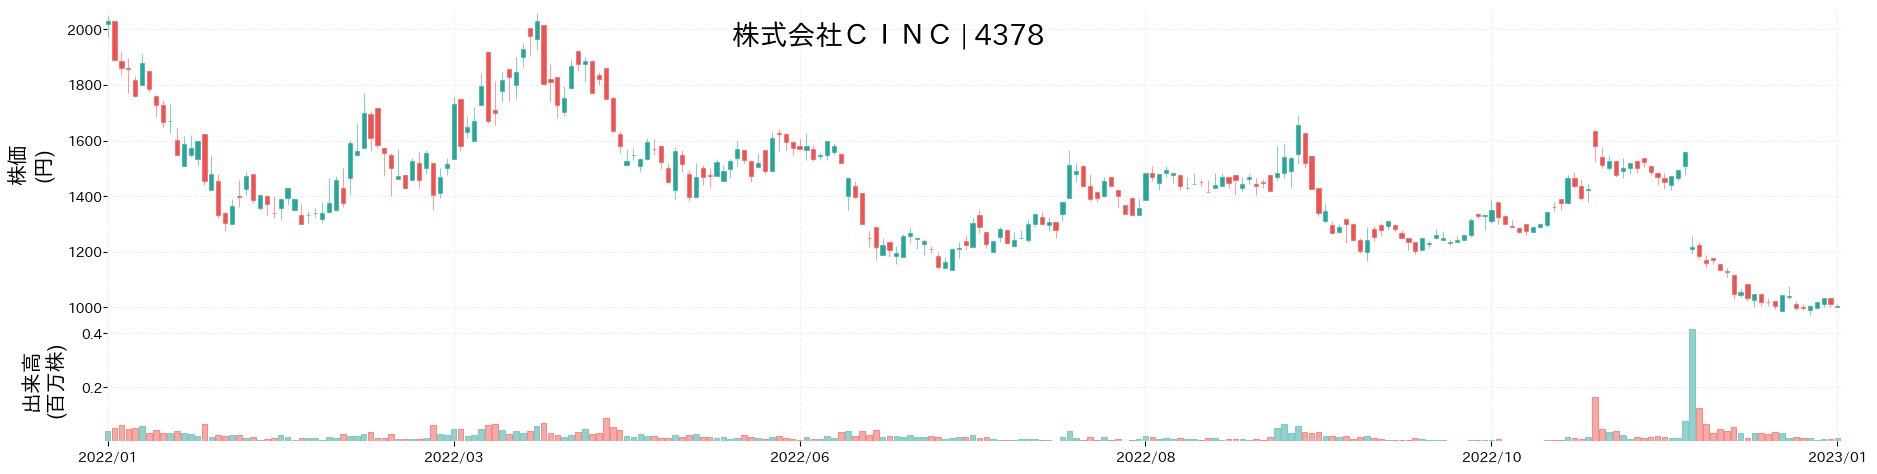 CINCの株価推移(2022)